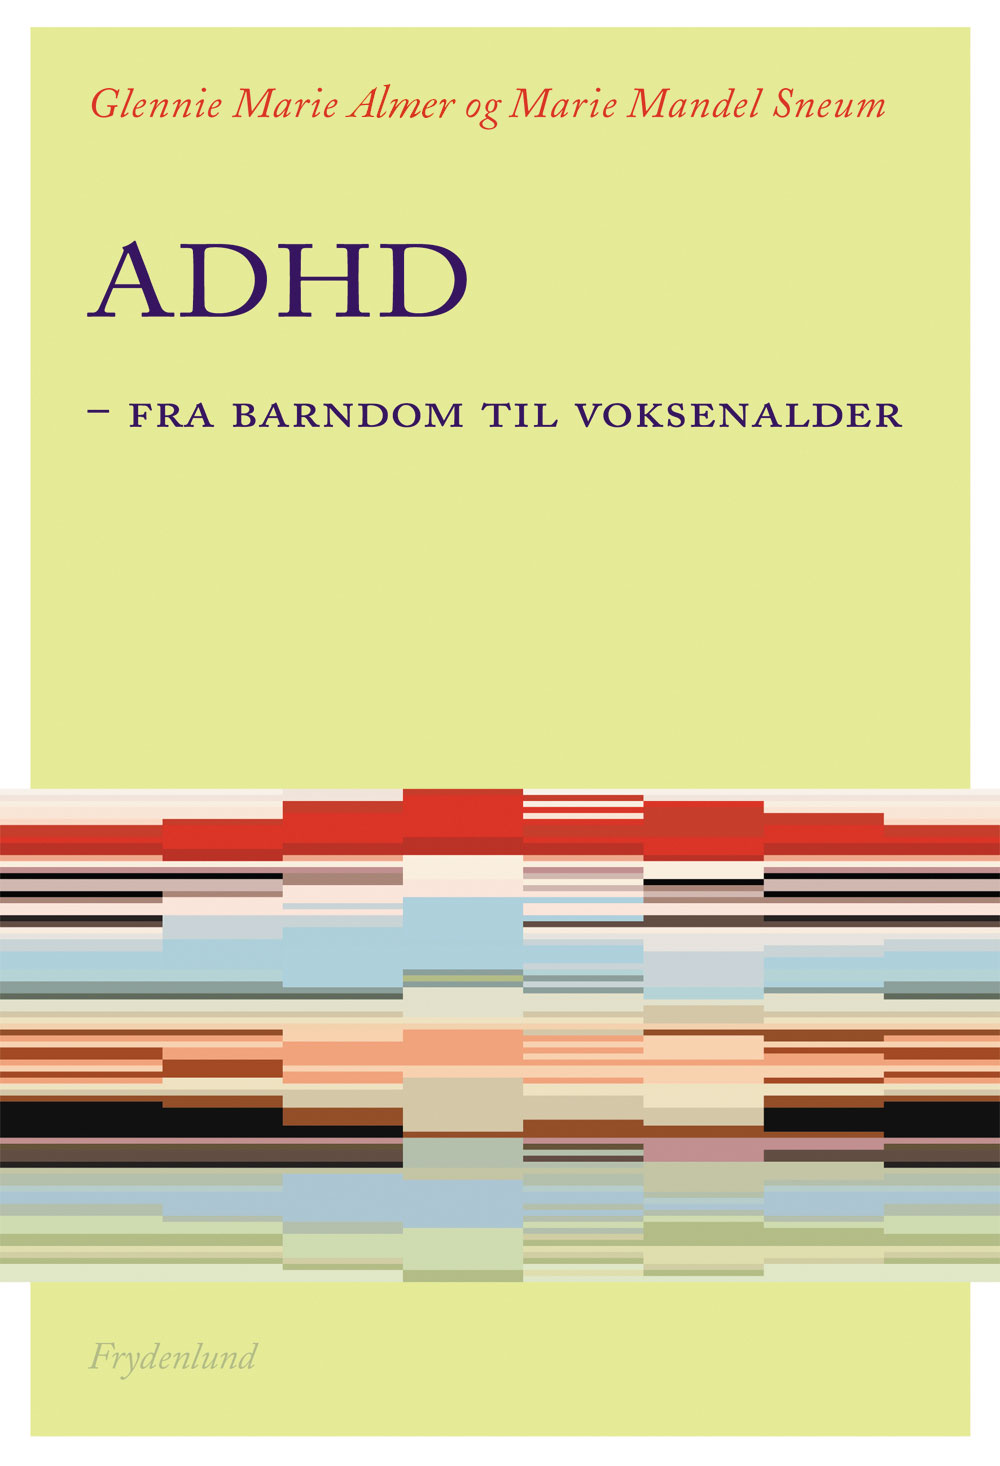 ADHD - Fra barndom til voksenalder